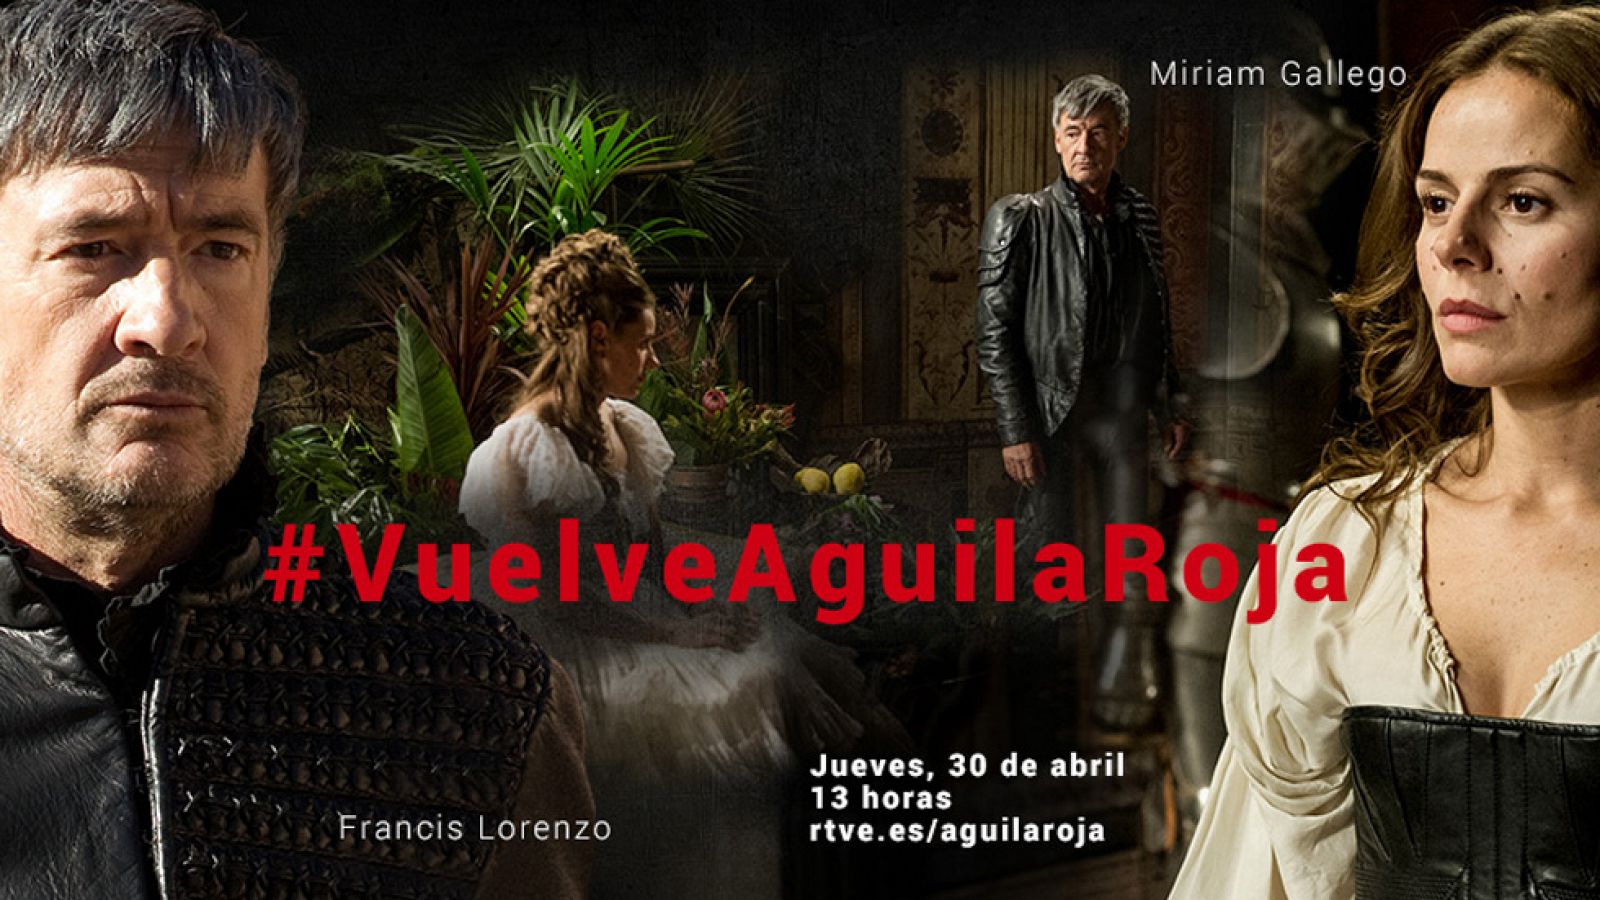 Vuelve a ver el videoencuentro con Miriam Gallego y Francis Lorenzo: #VuelveAguilaRoja